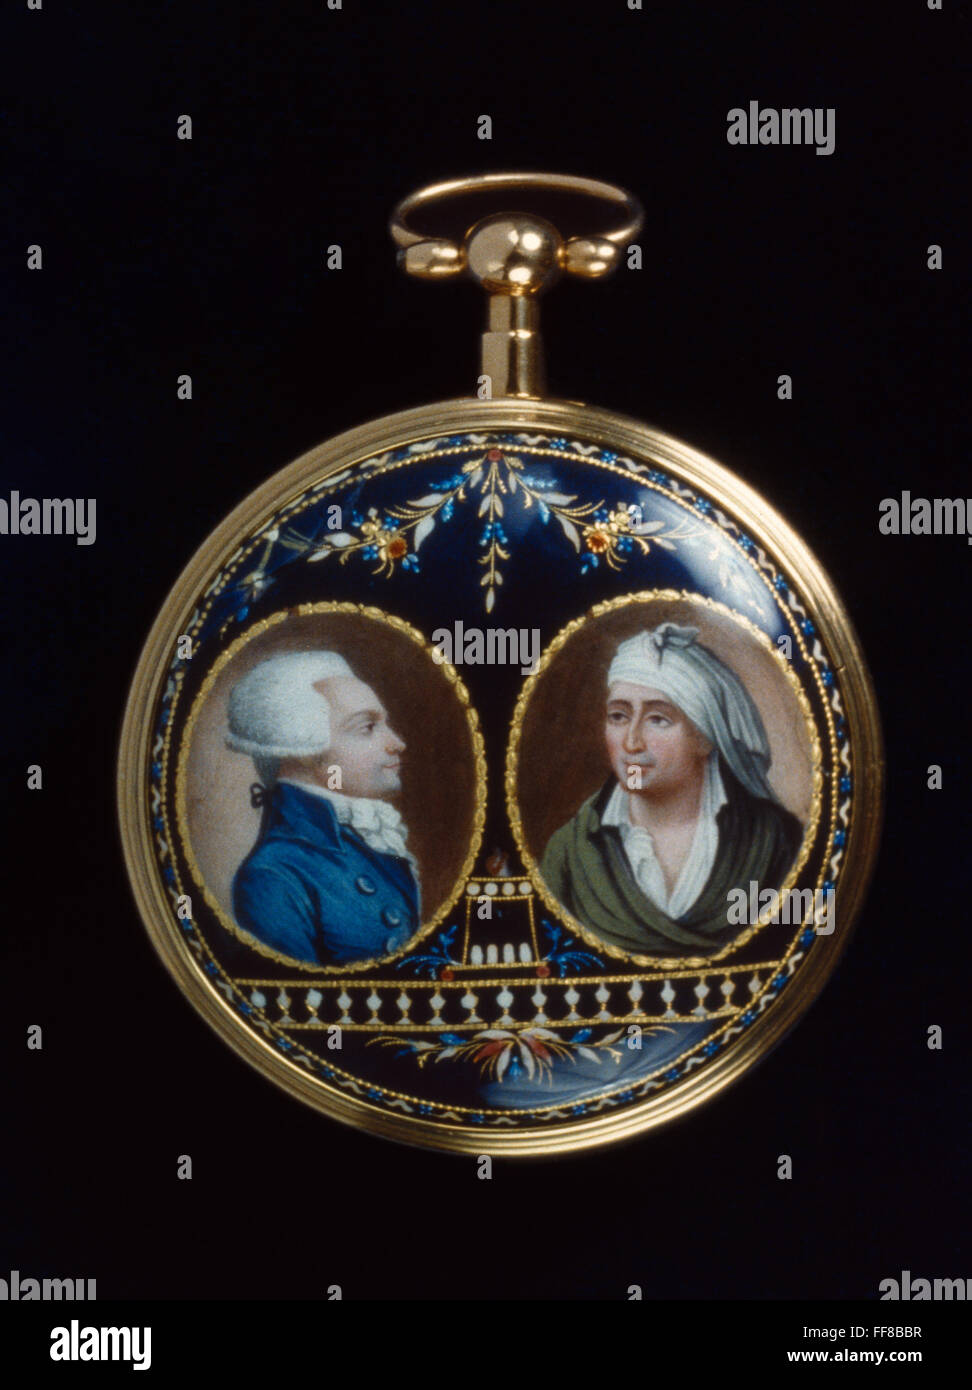 MAXIMILIEN Robespierre /n(1758-1794). Figura destacada de la Revolución Francesa. Representado en un oro y esmalte watch (izquierda), con Jean-Paul Marat (derecha). Suiza, 1793-94. Foto de stock